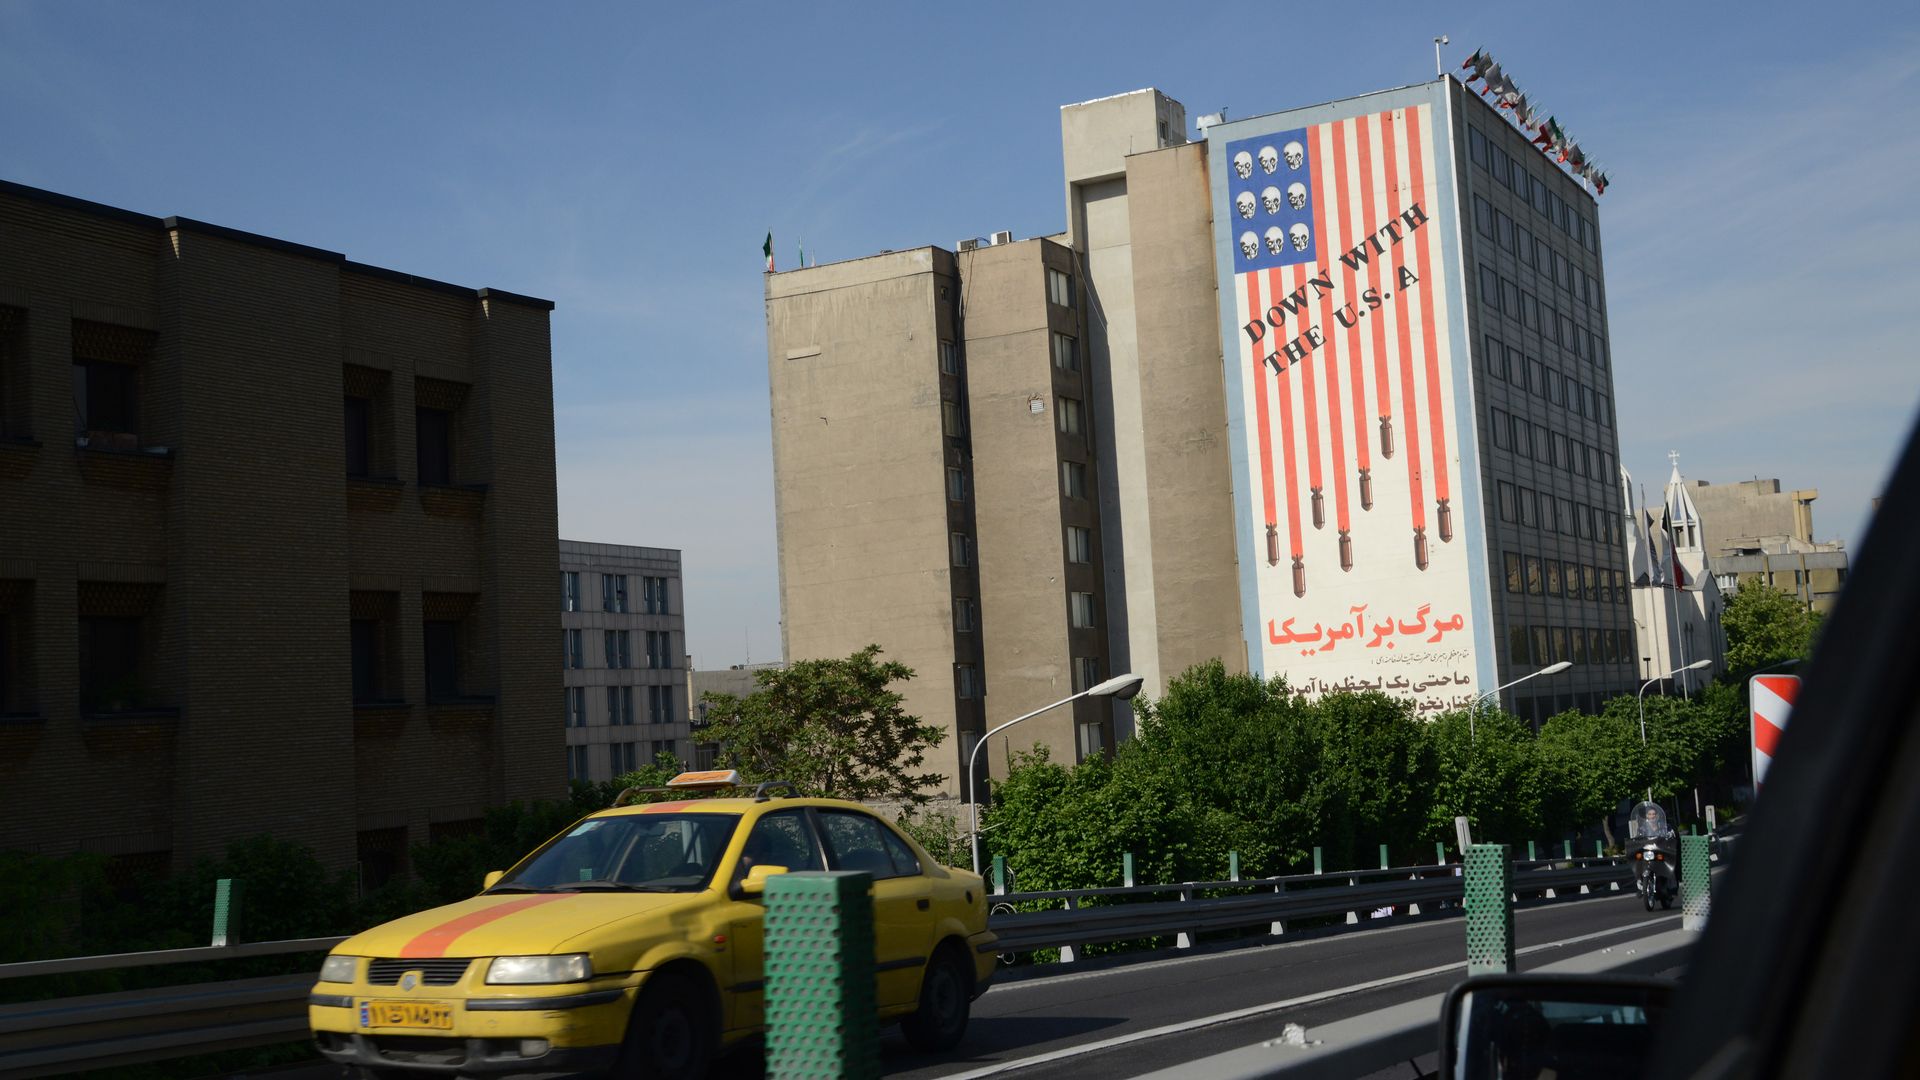 Anti-U.S. mural in Terhan.